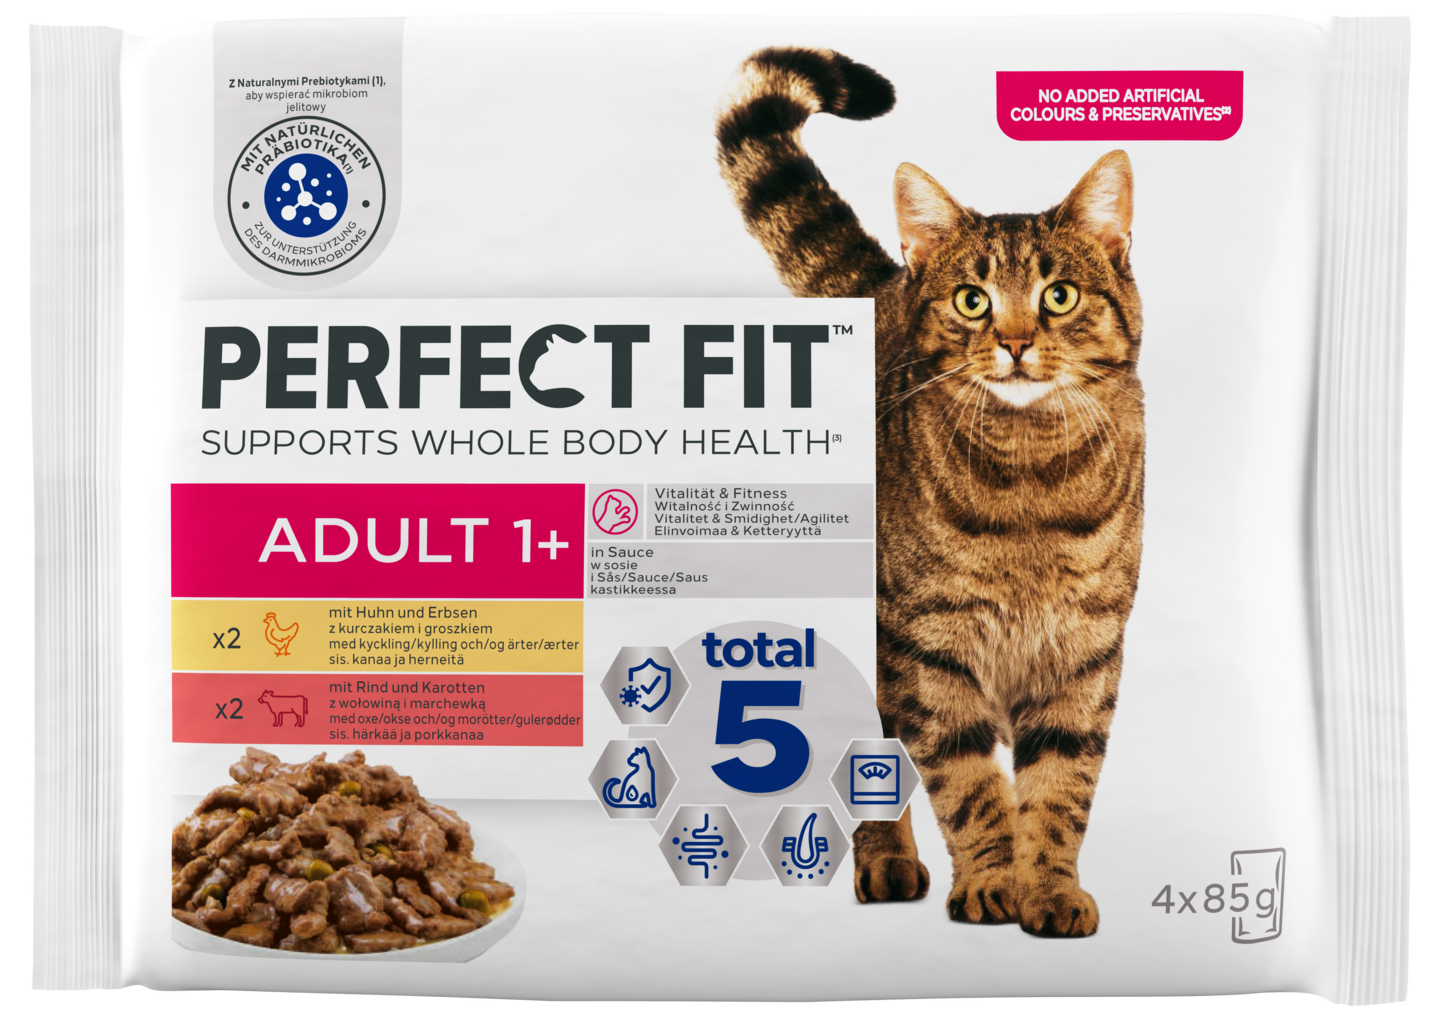 Perfect Fit Cat Adult 1+ Mix kastikkeessa 4x85g